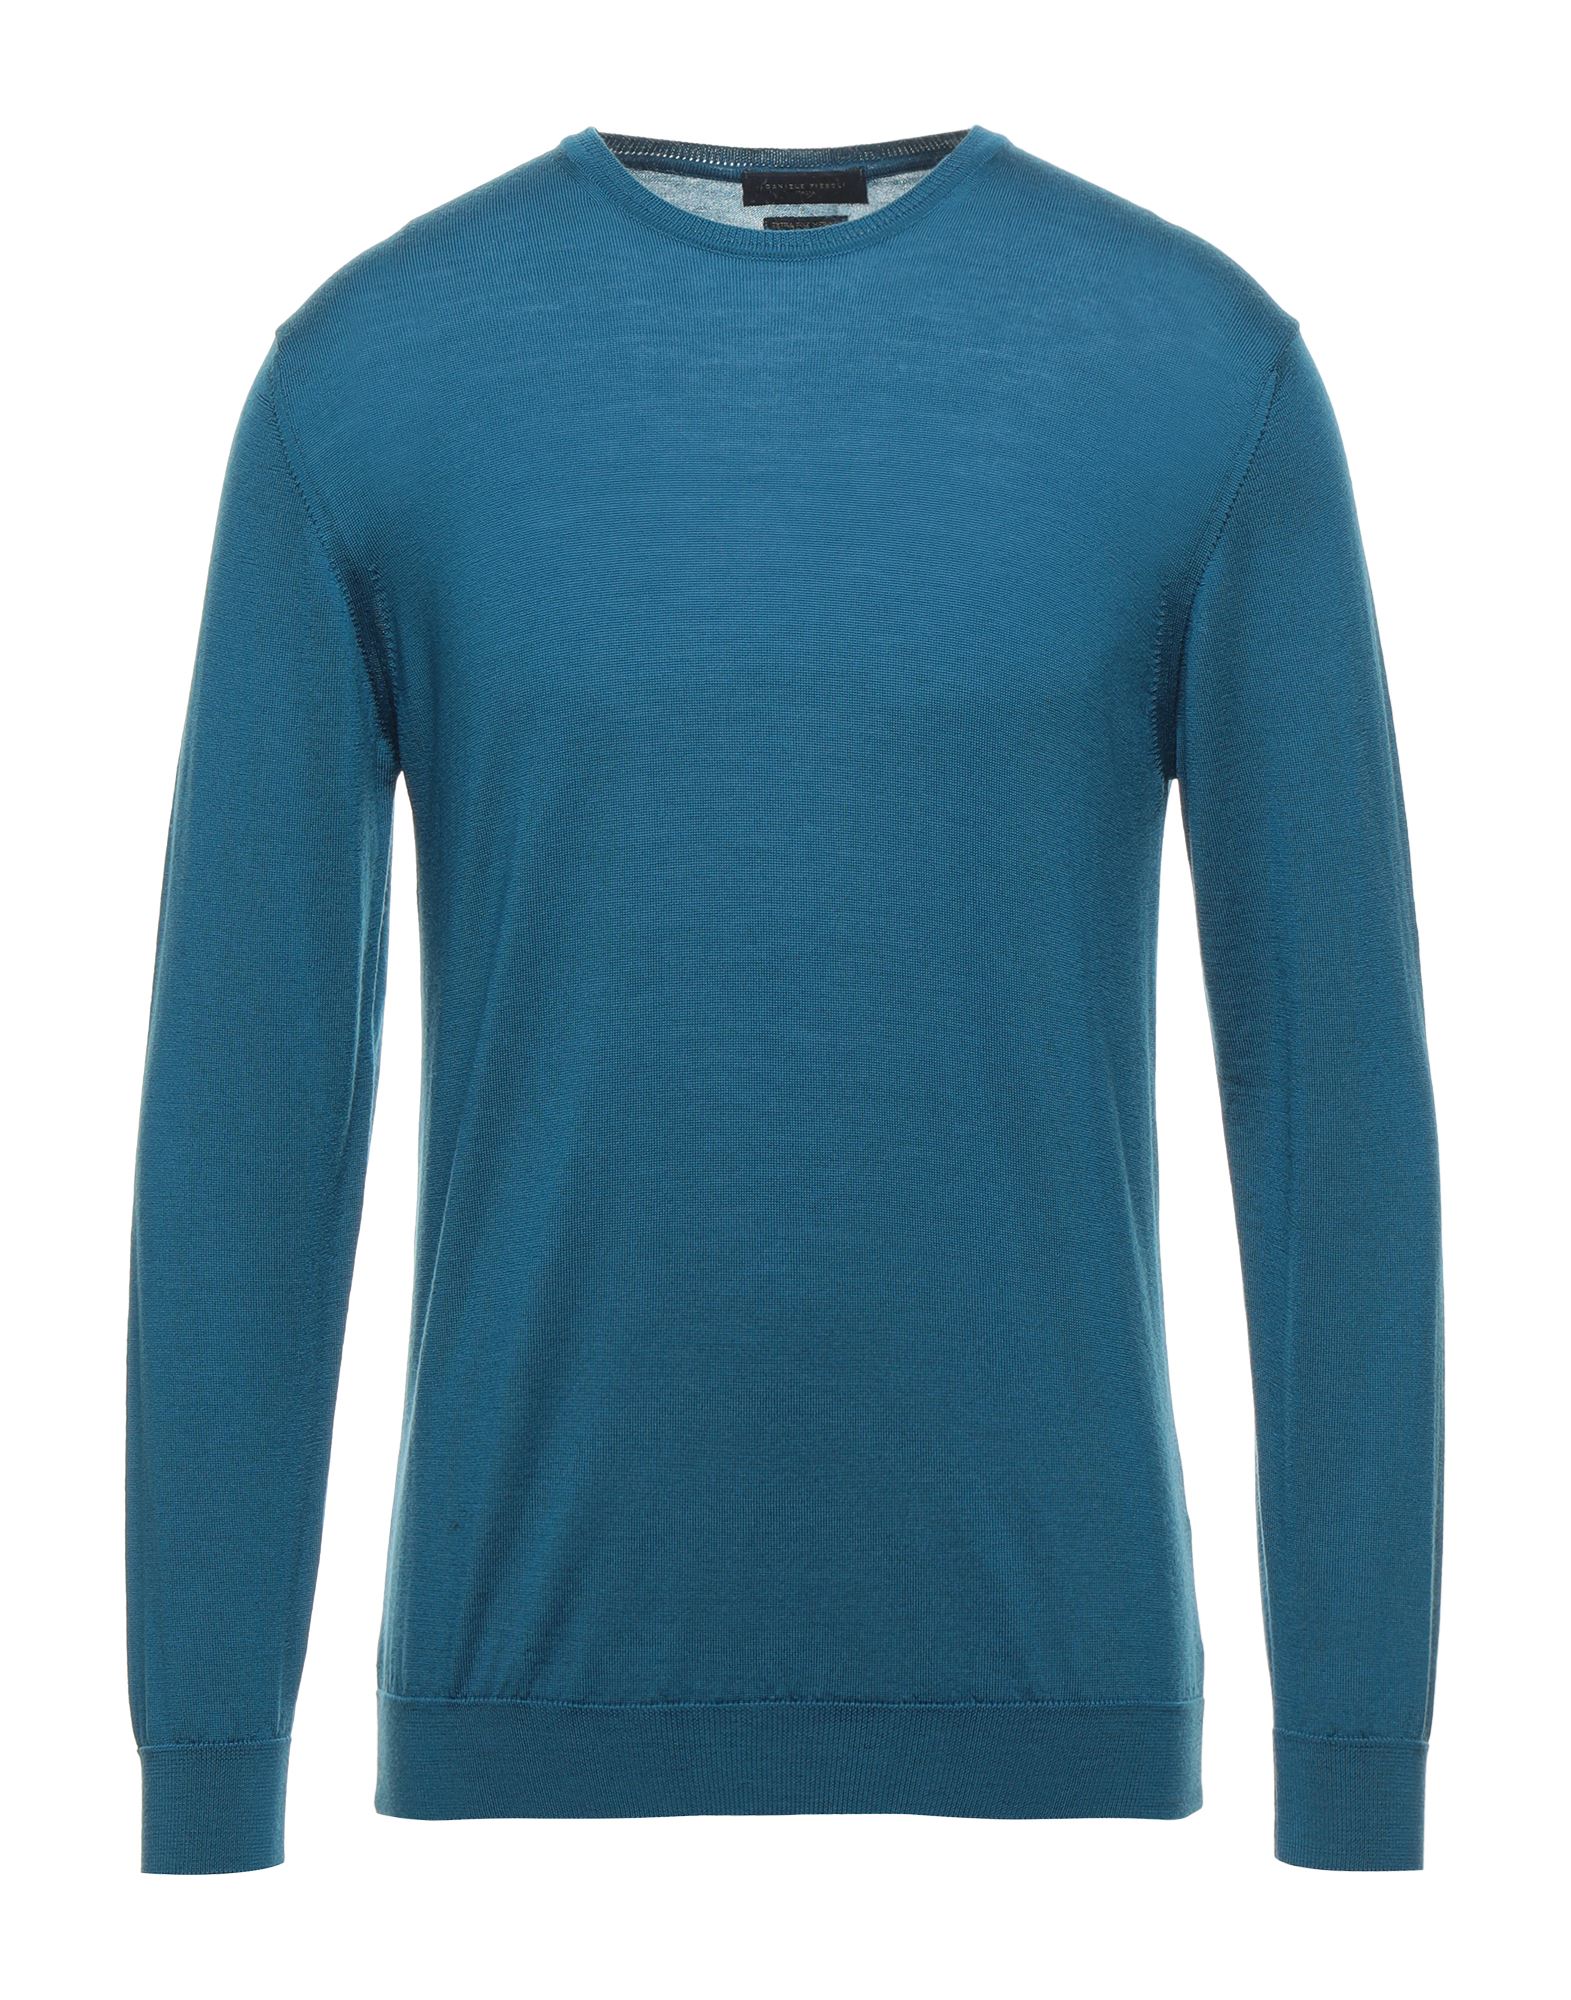 Daniele Fiesoli Sweaters In Bright Blue